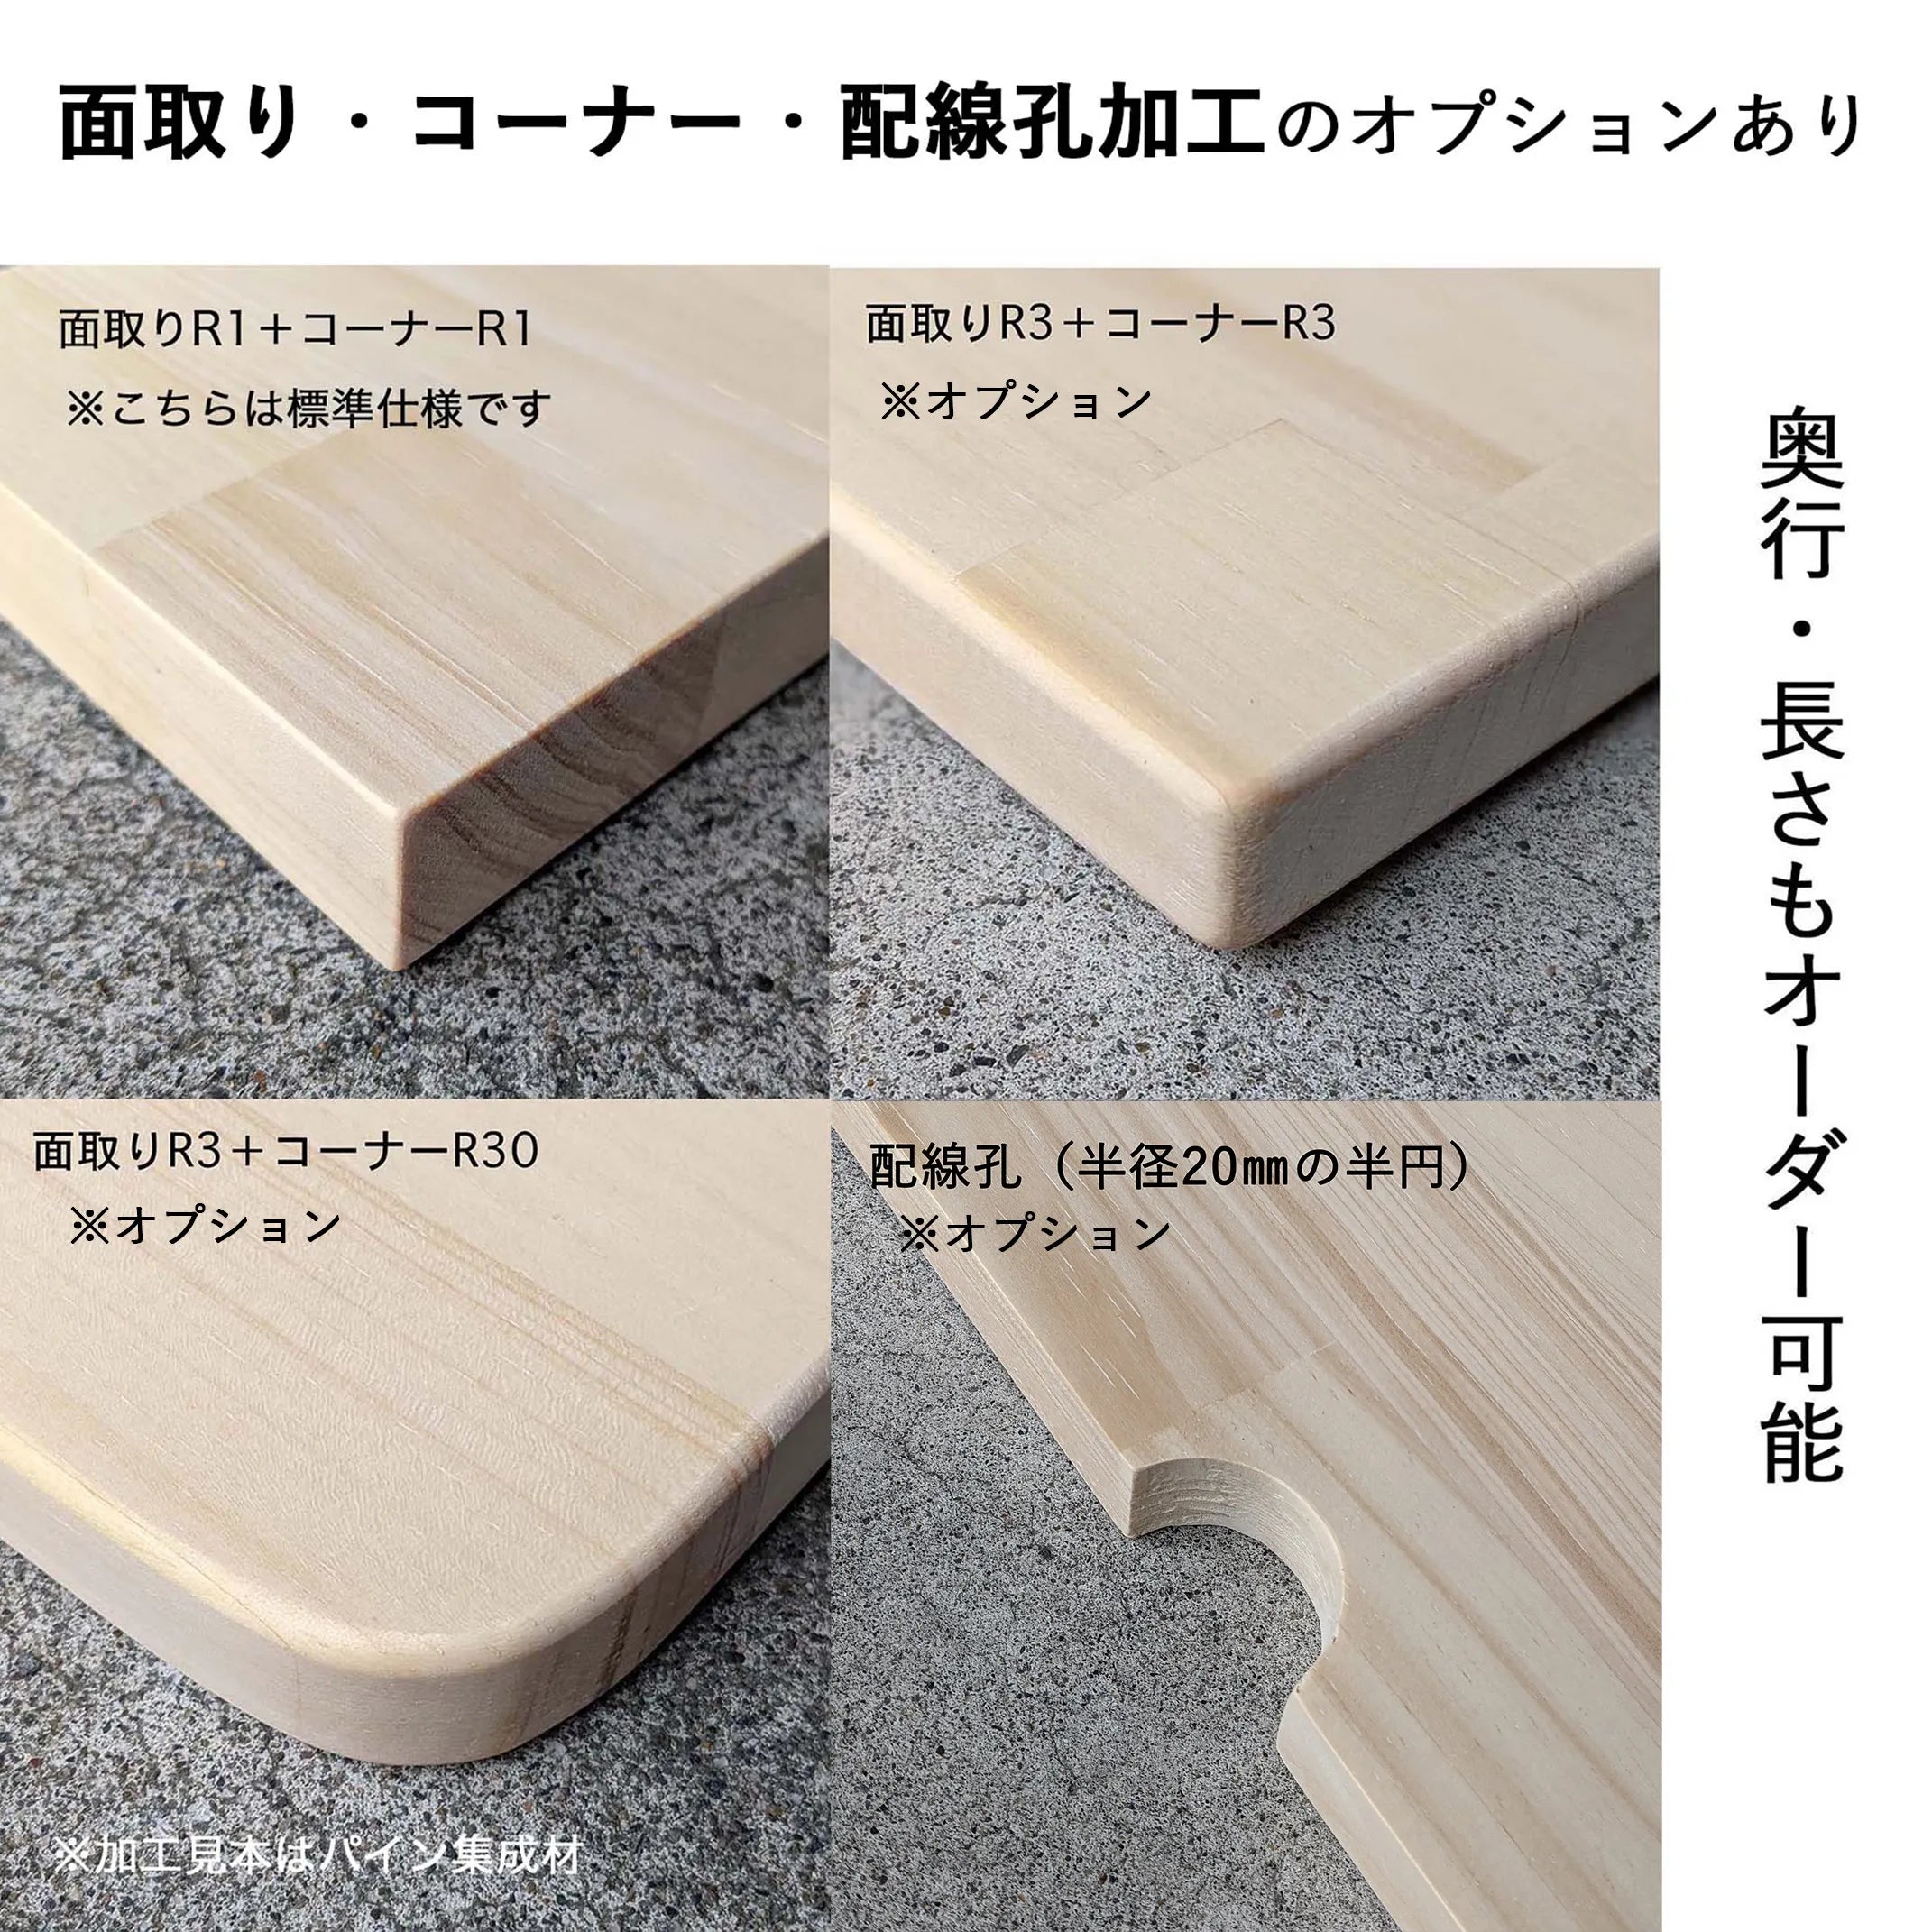 テーブル / デスク ゴム材 × アイアン脚  Z型